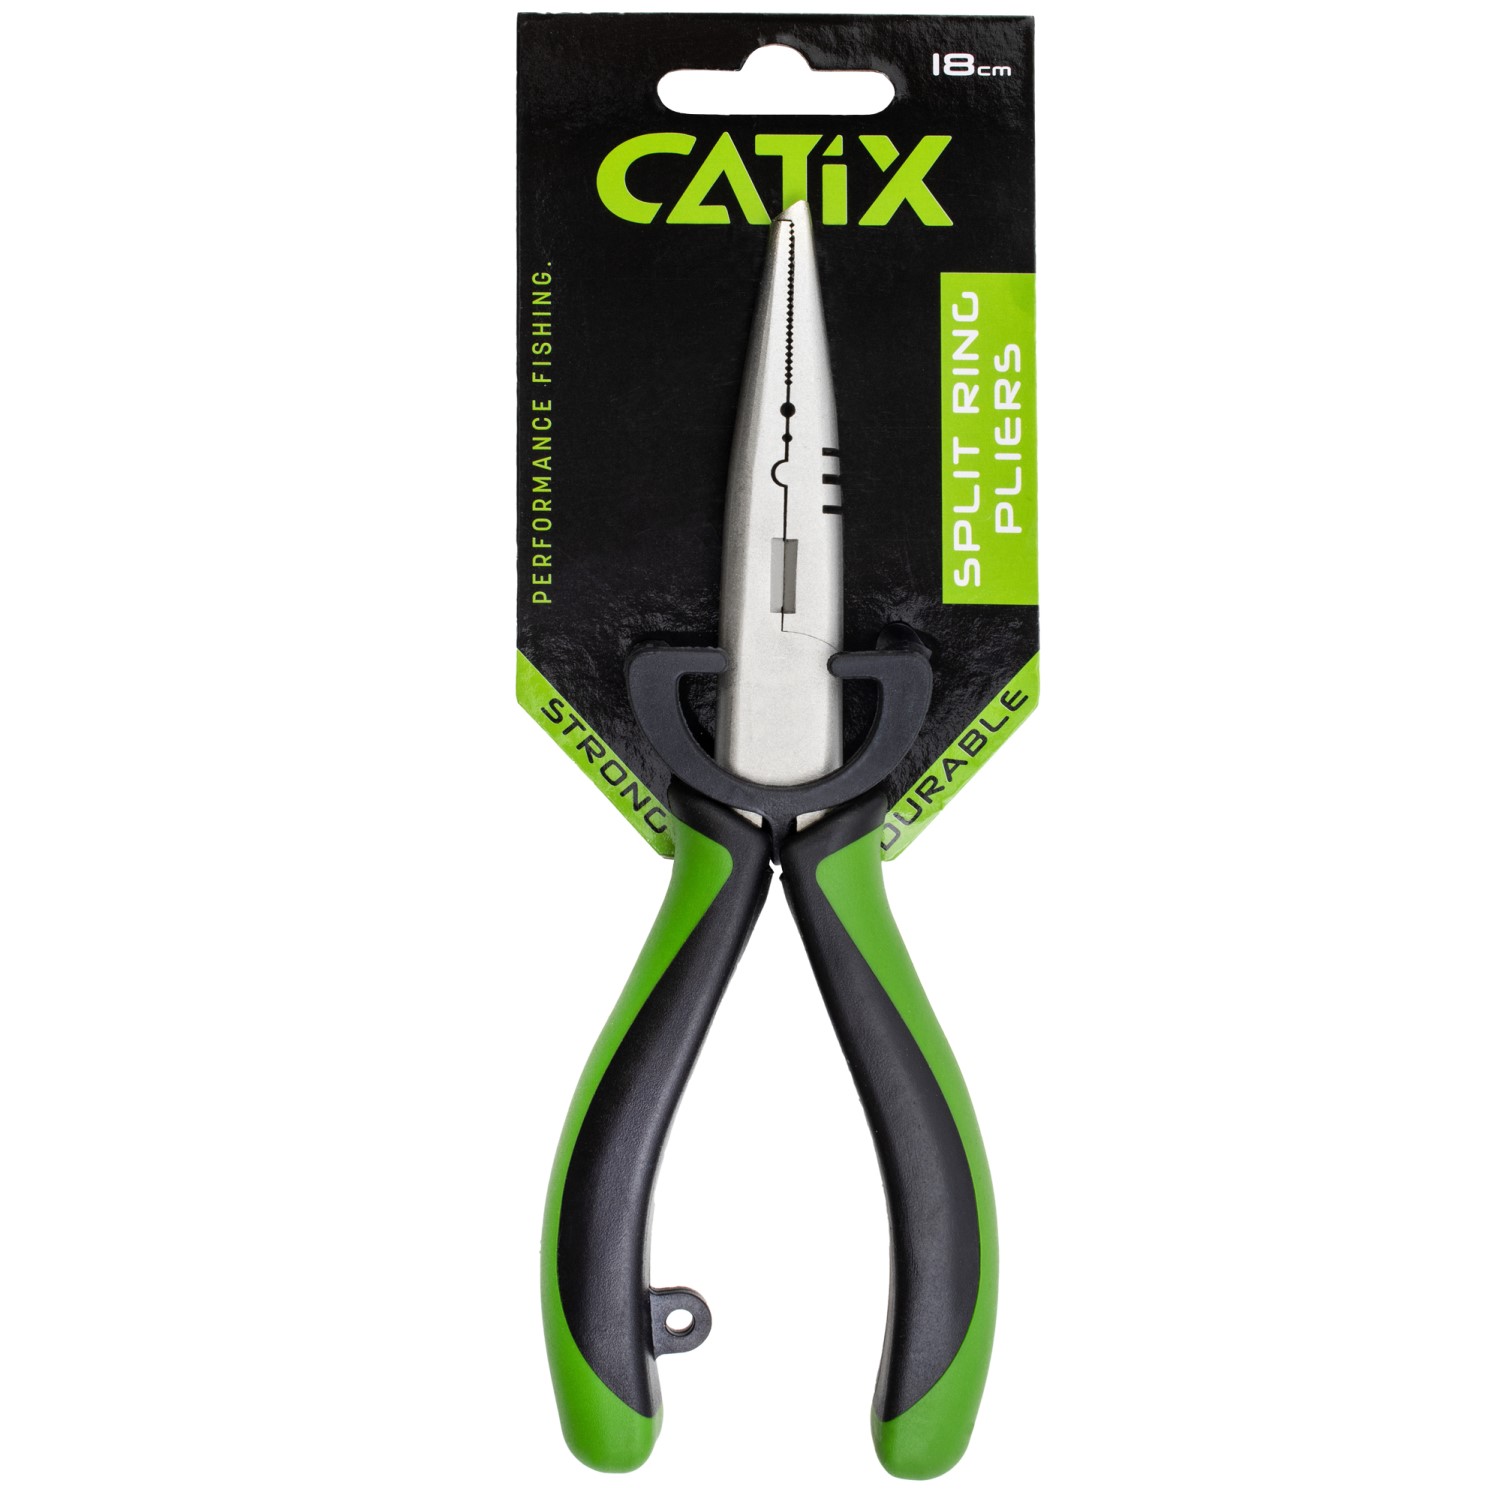 Catix splitring tang 18cm 